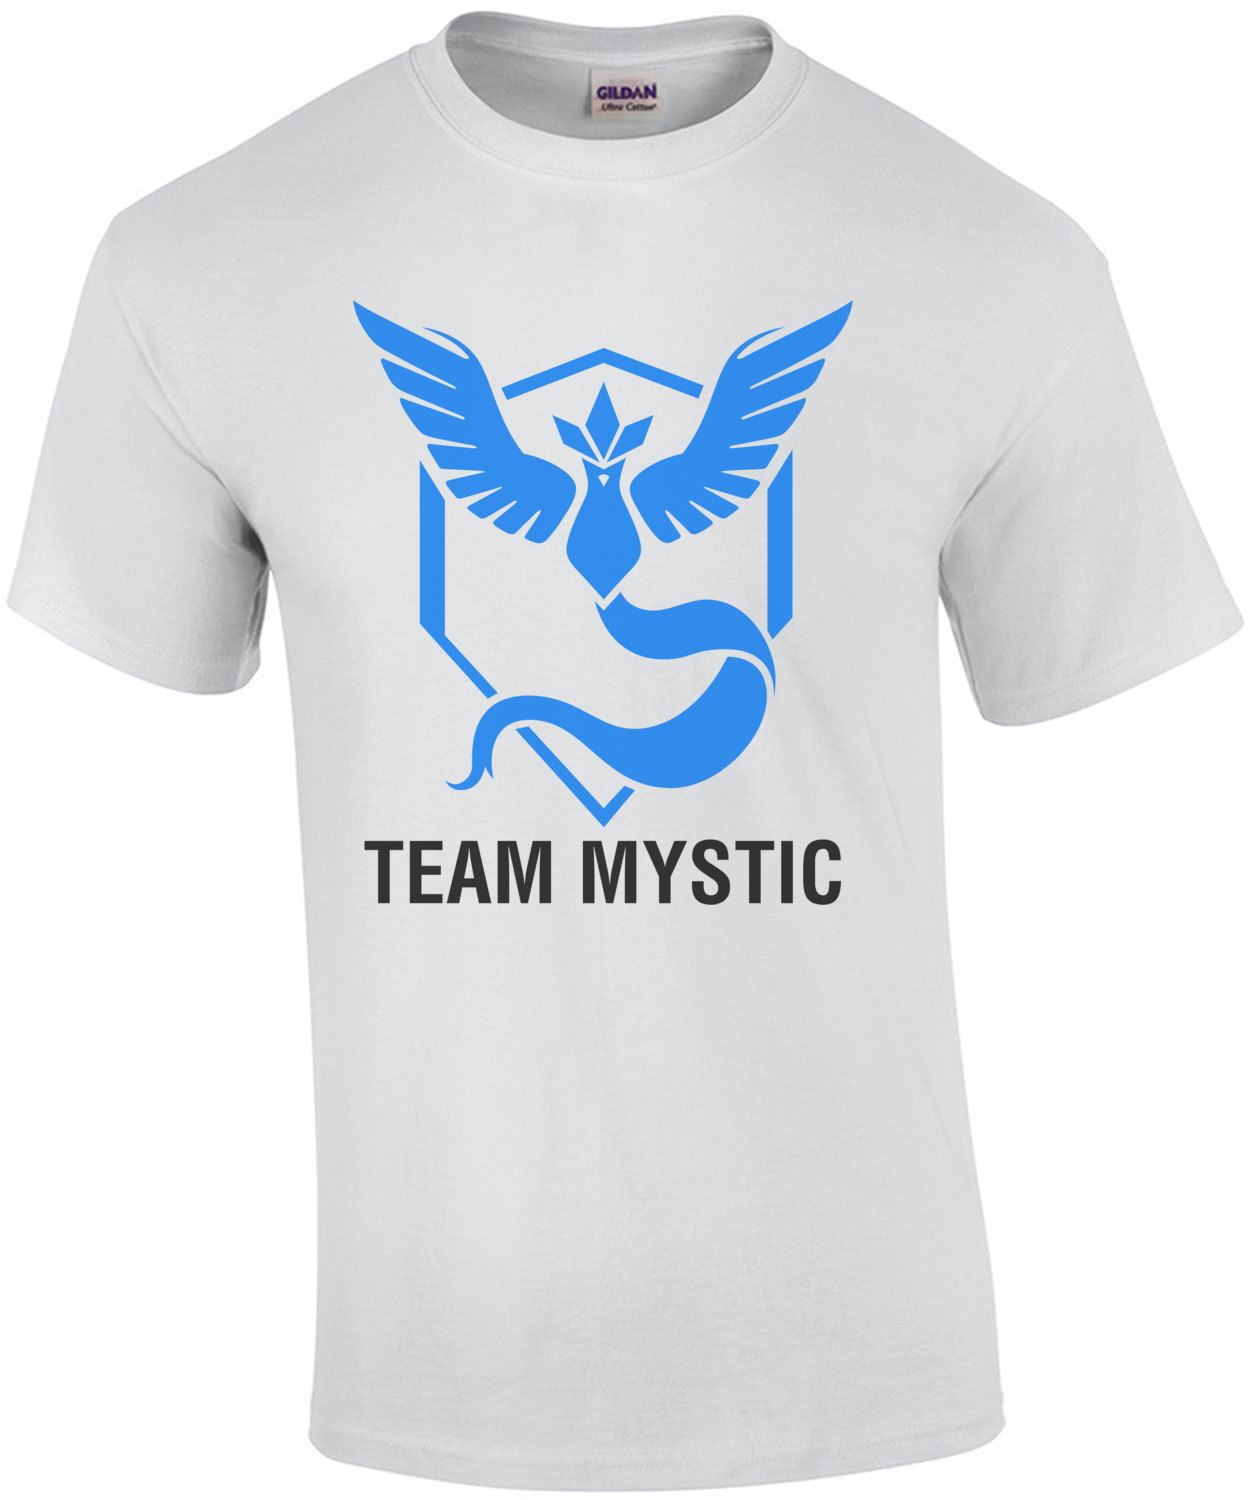 Details about  / POKEMON TEAM MYSTIC!! t-shirt